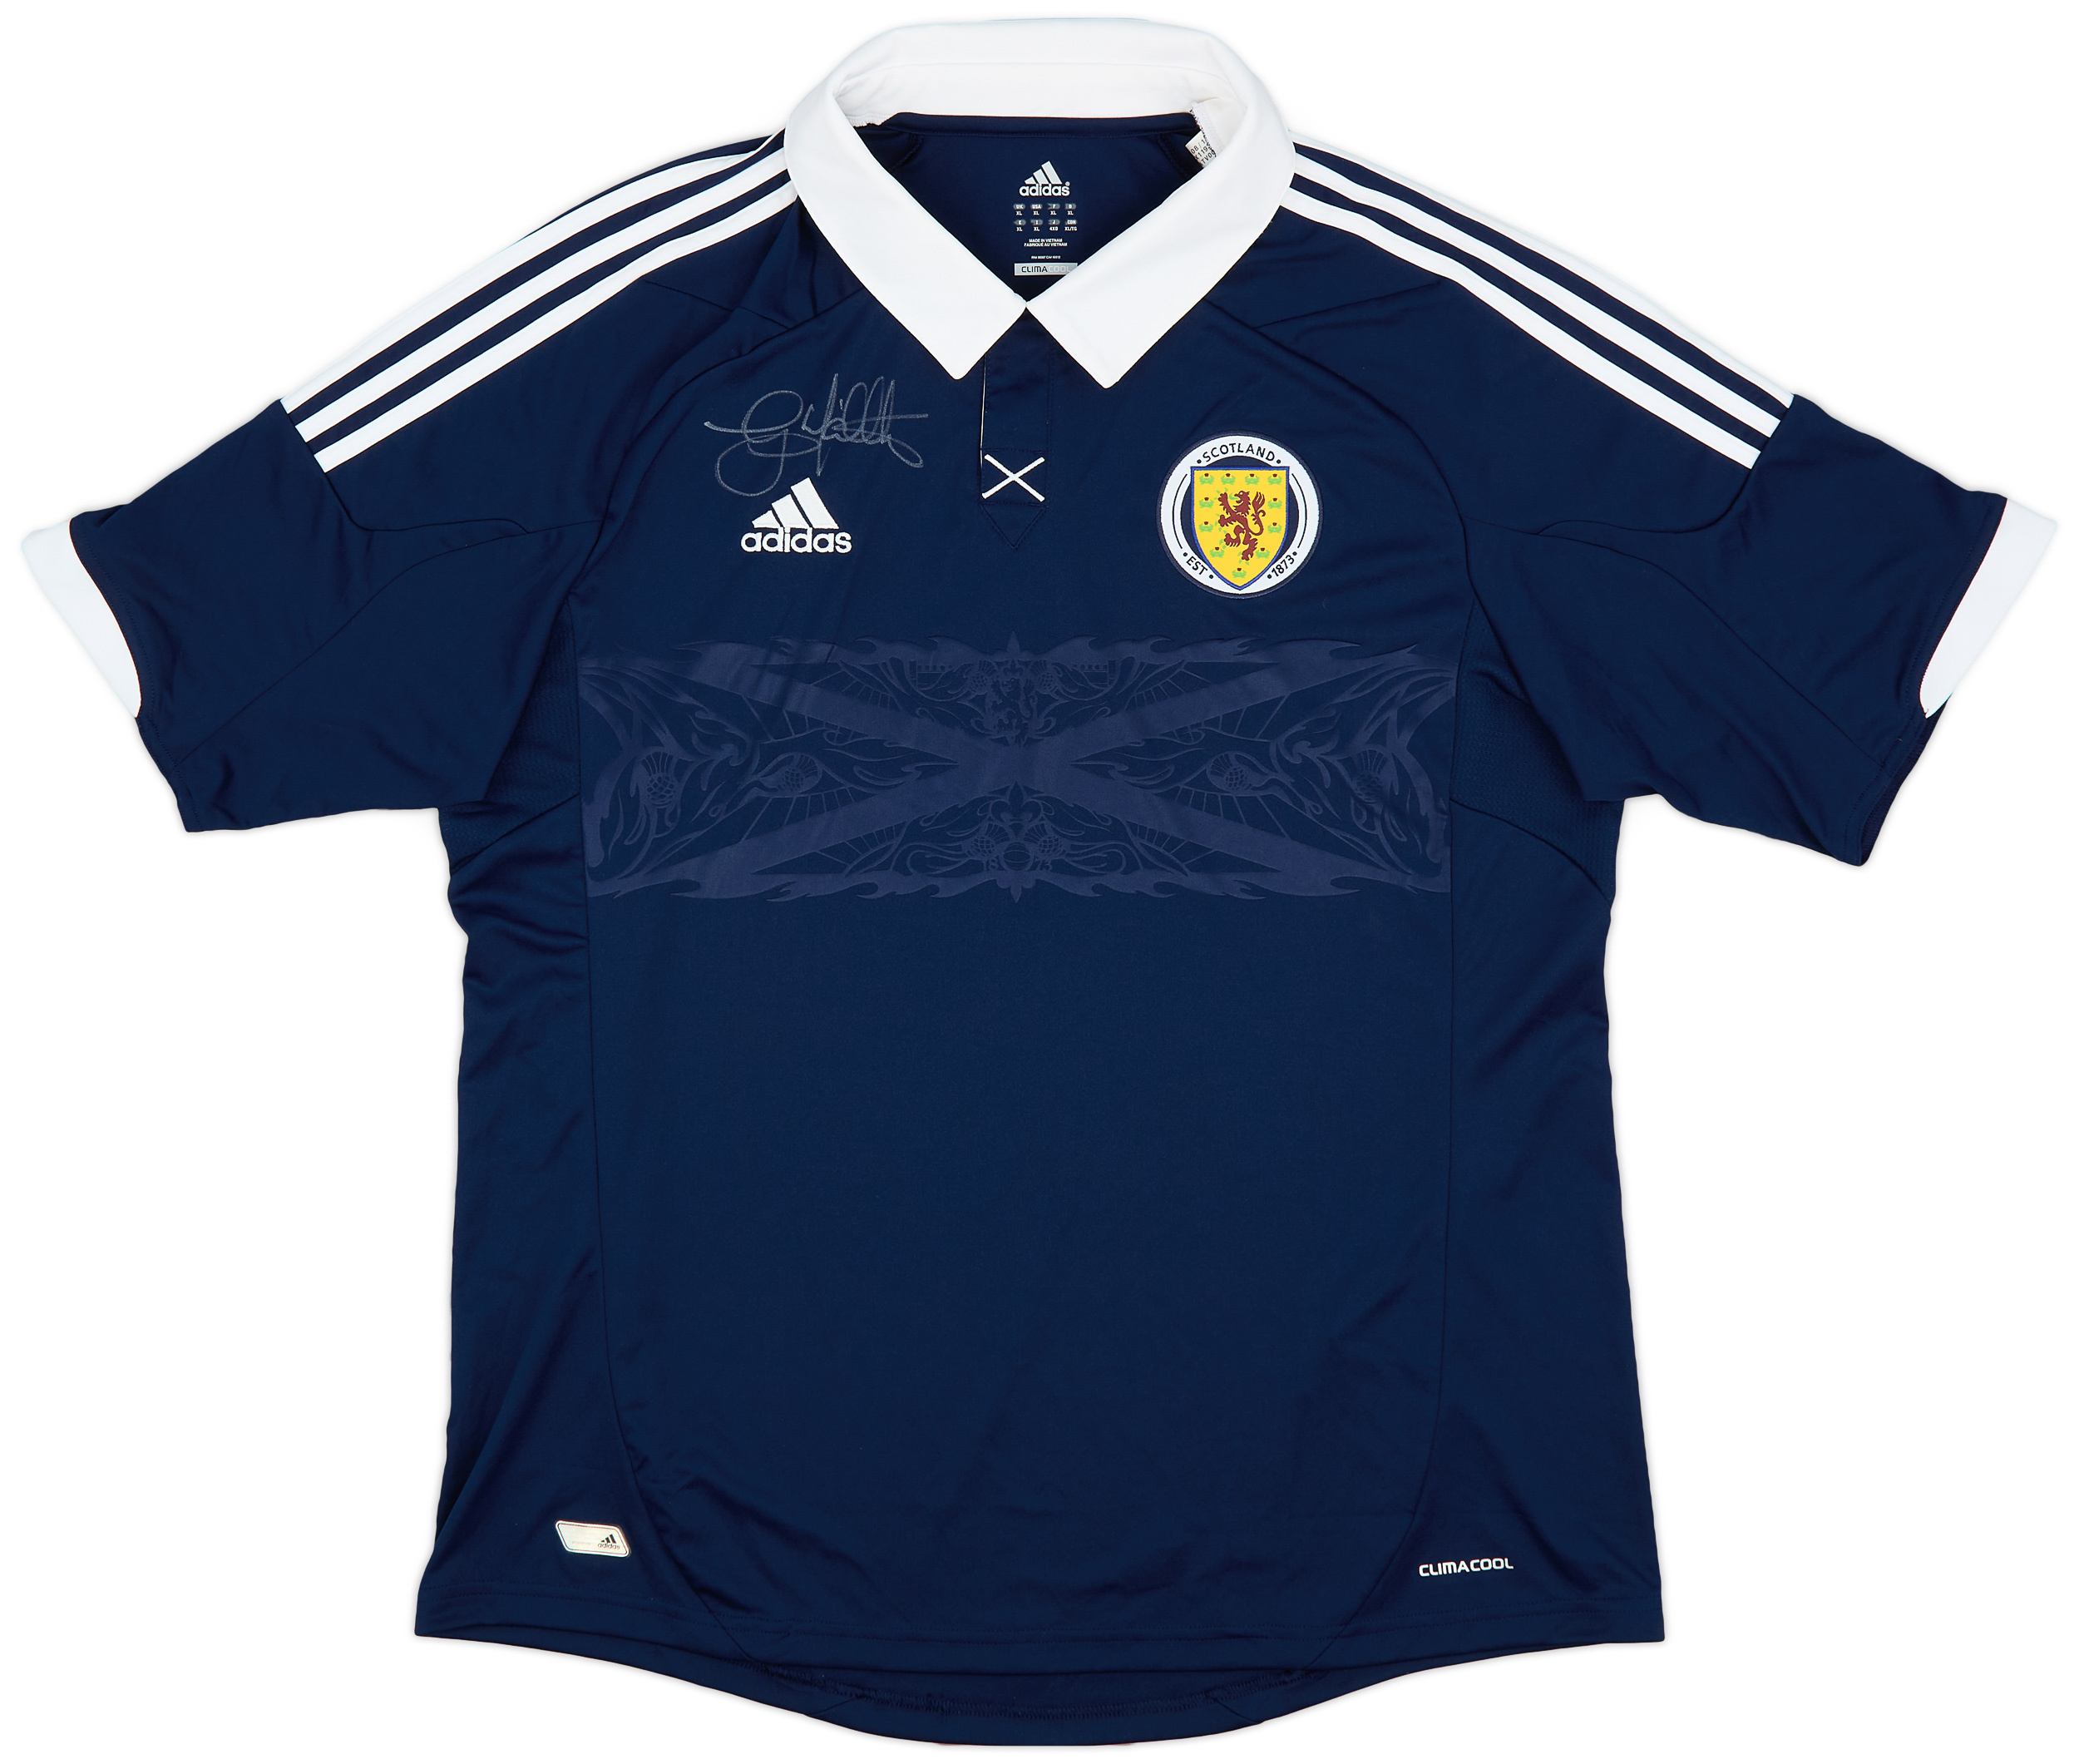 2011-13 Scotland Signed Home Shirt - 9/10 - ()